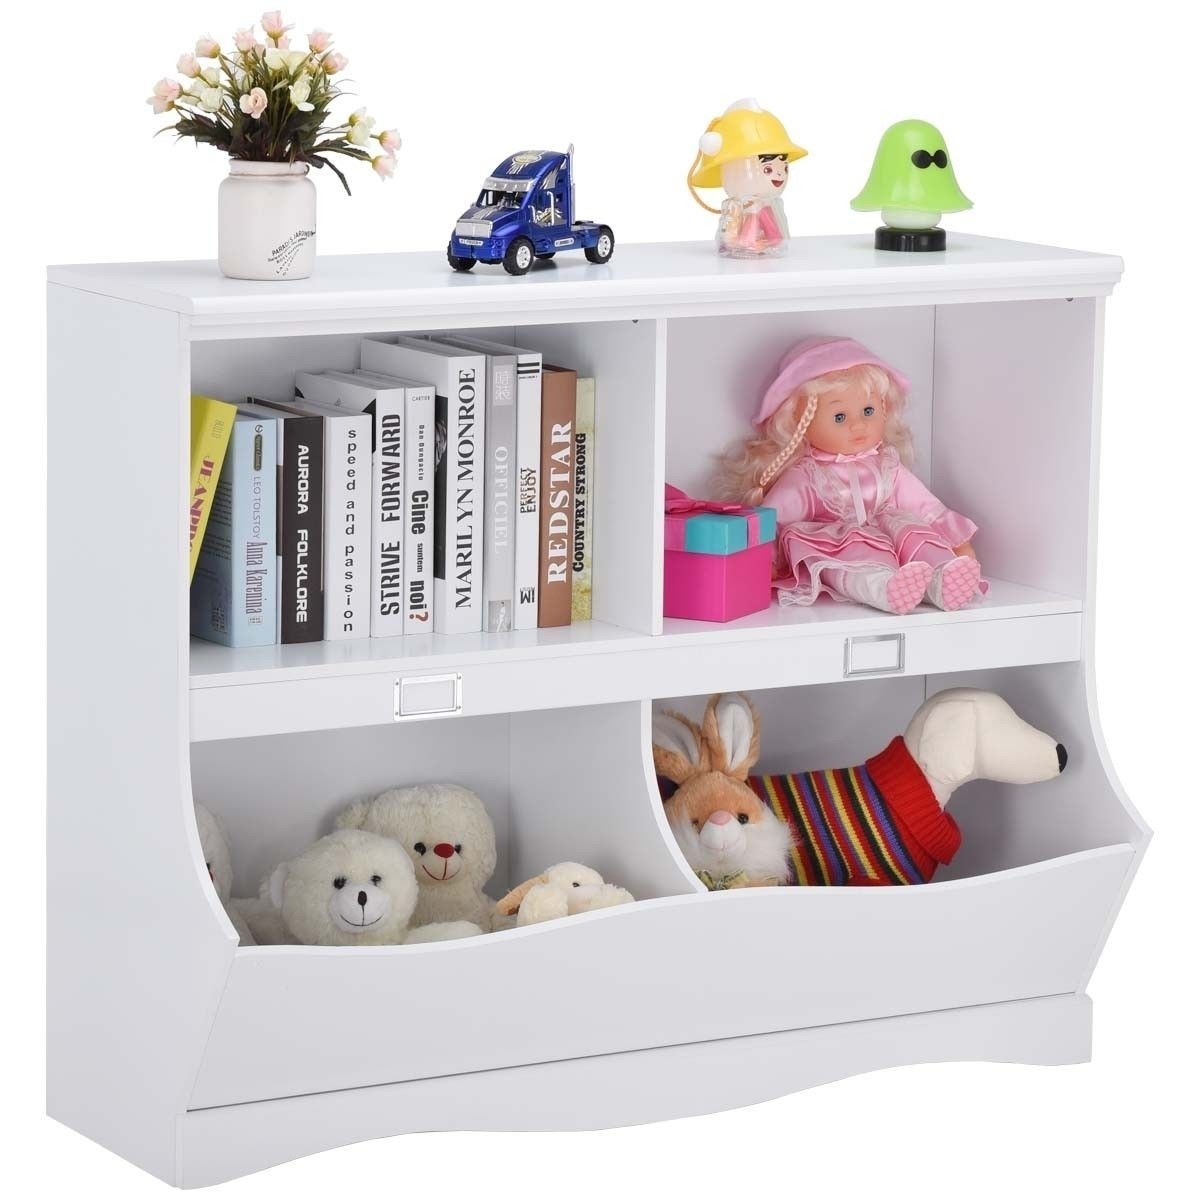 Children storage white bookcase toy organizer by choice